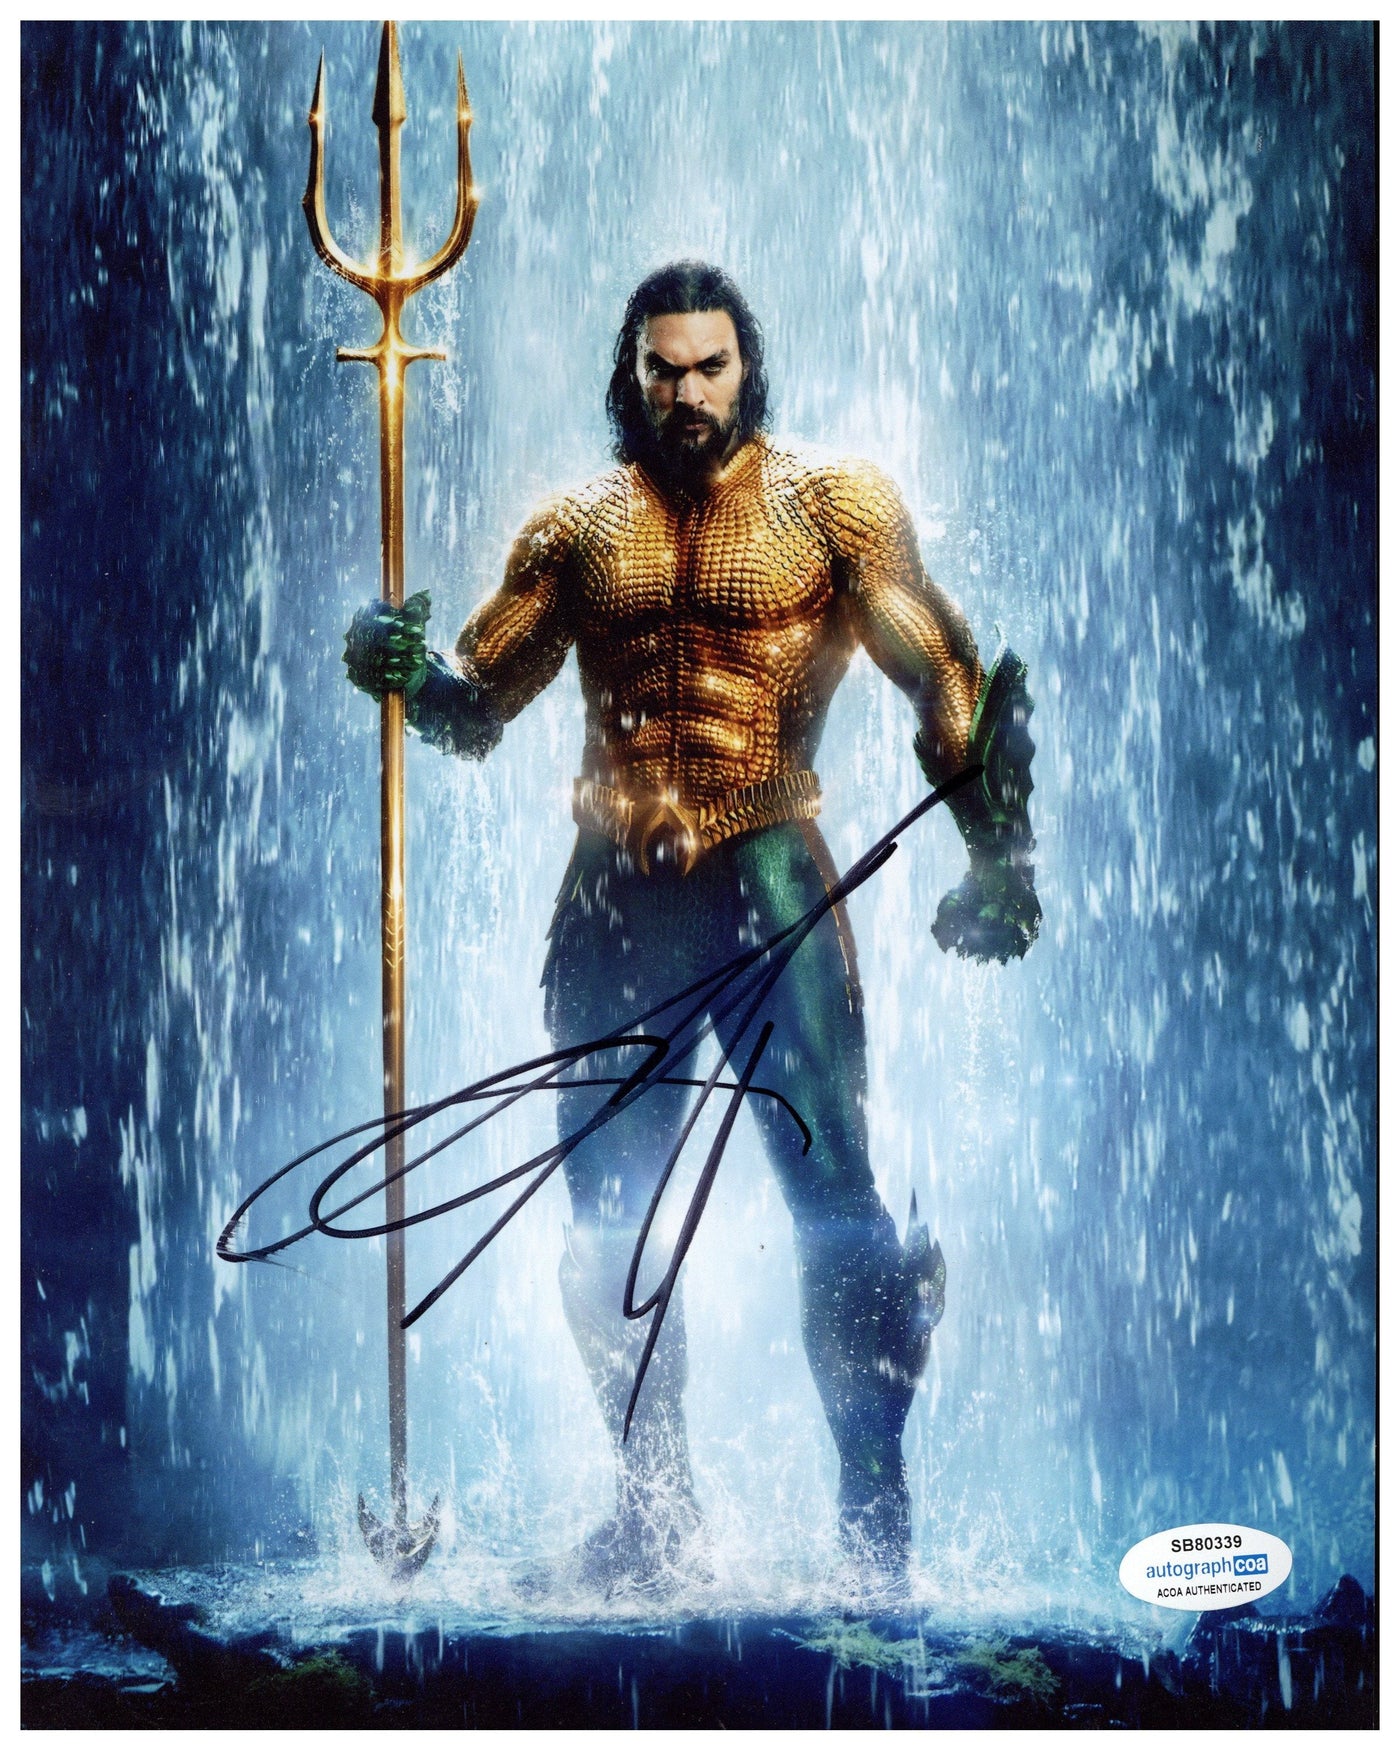 Jason Momoa Signed 8x10 Photo Aquaman Autographed ACOA #2